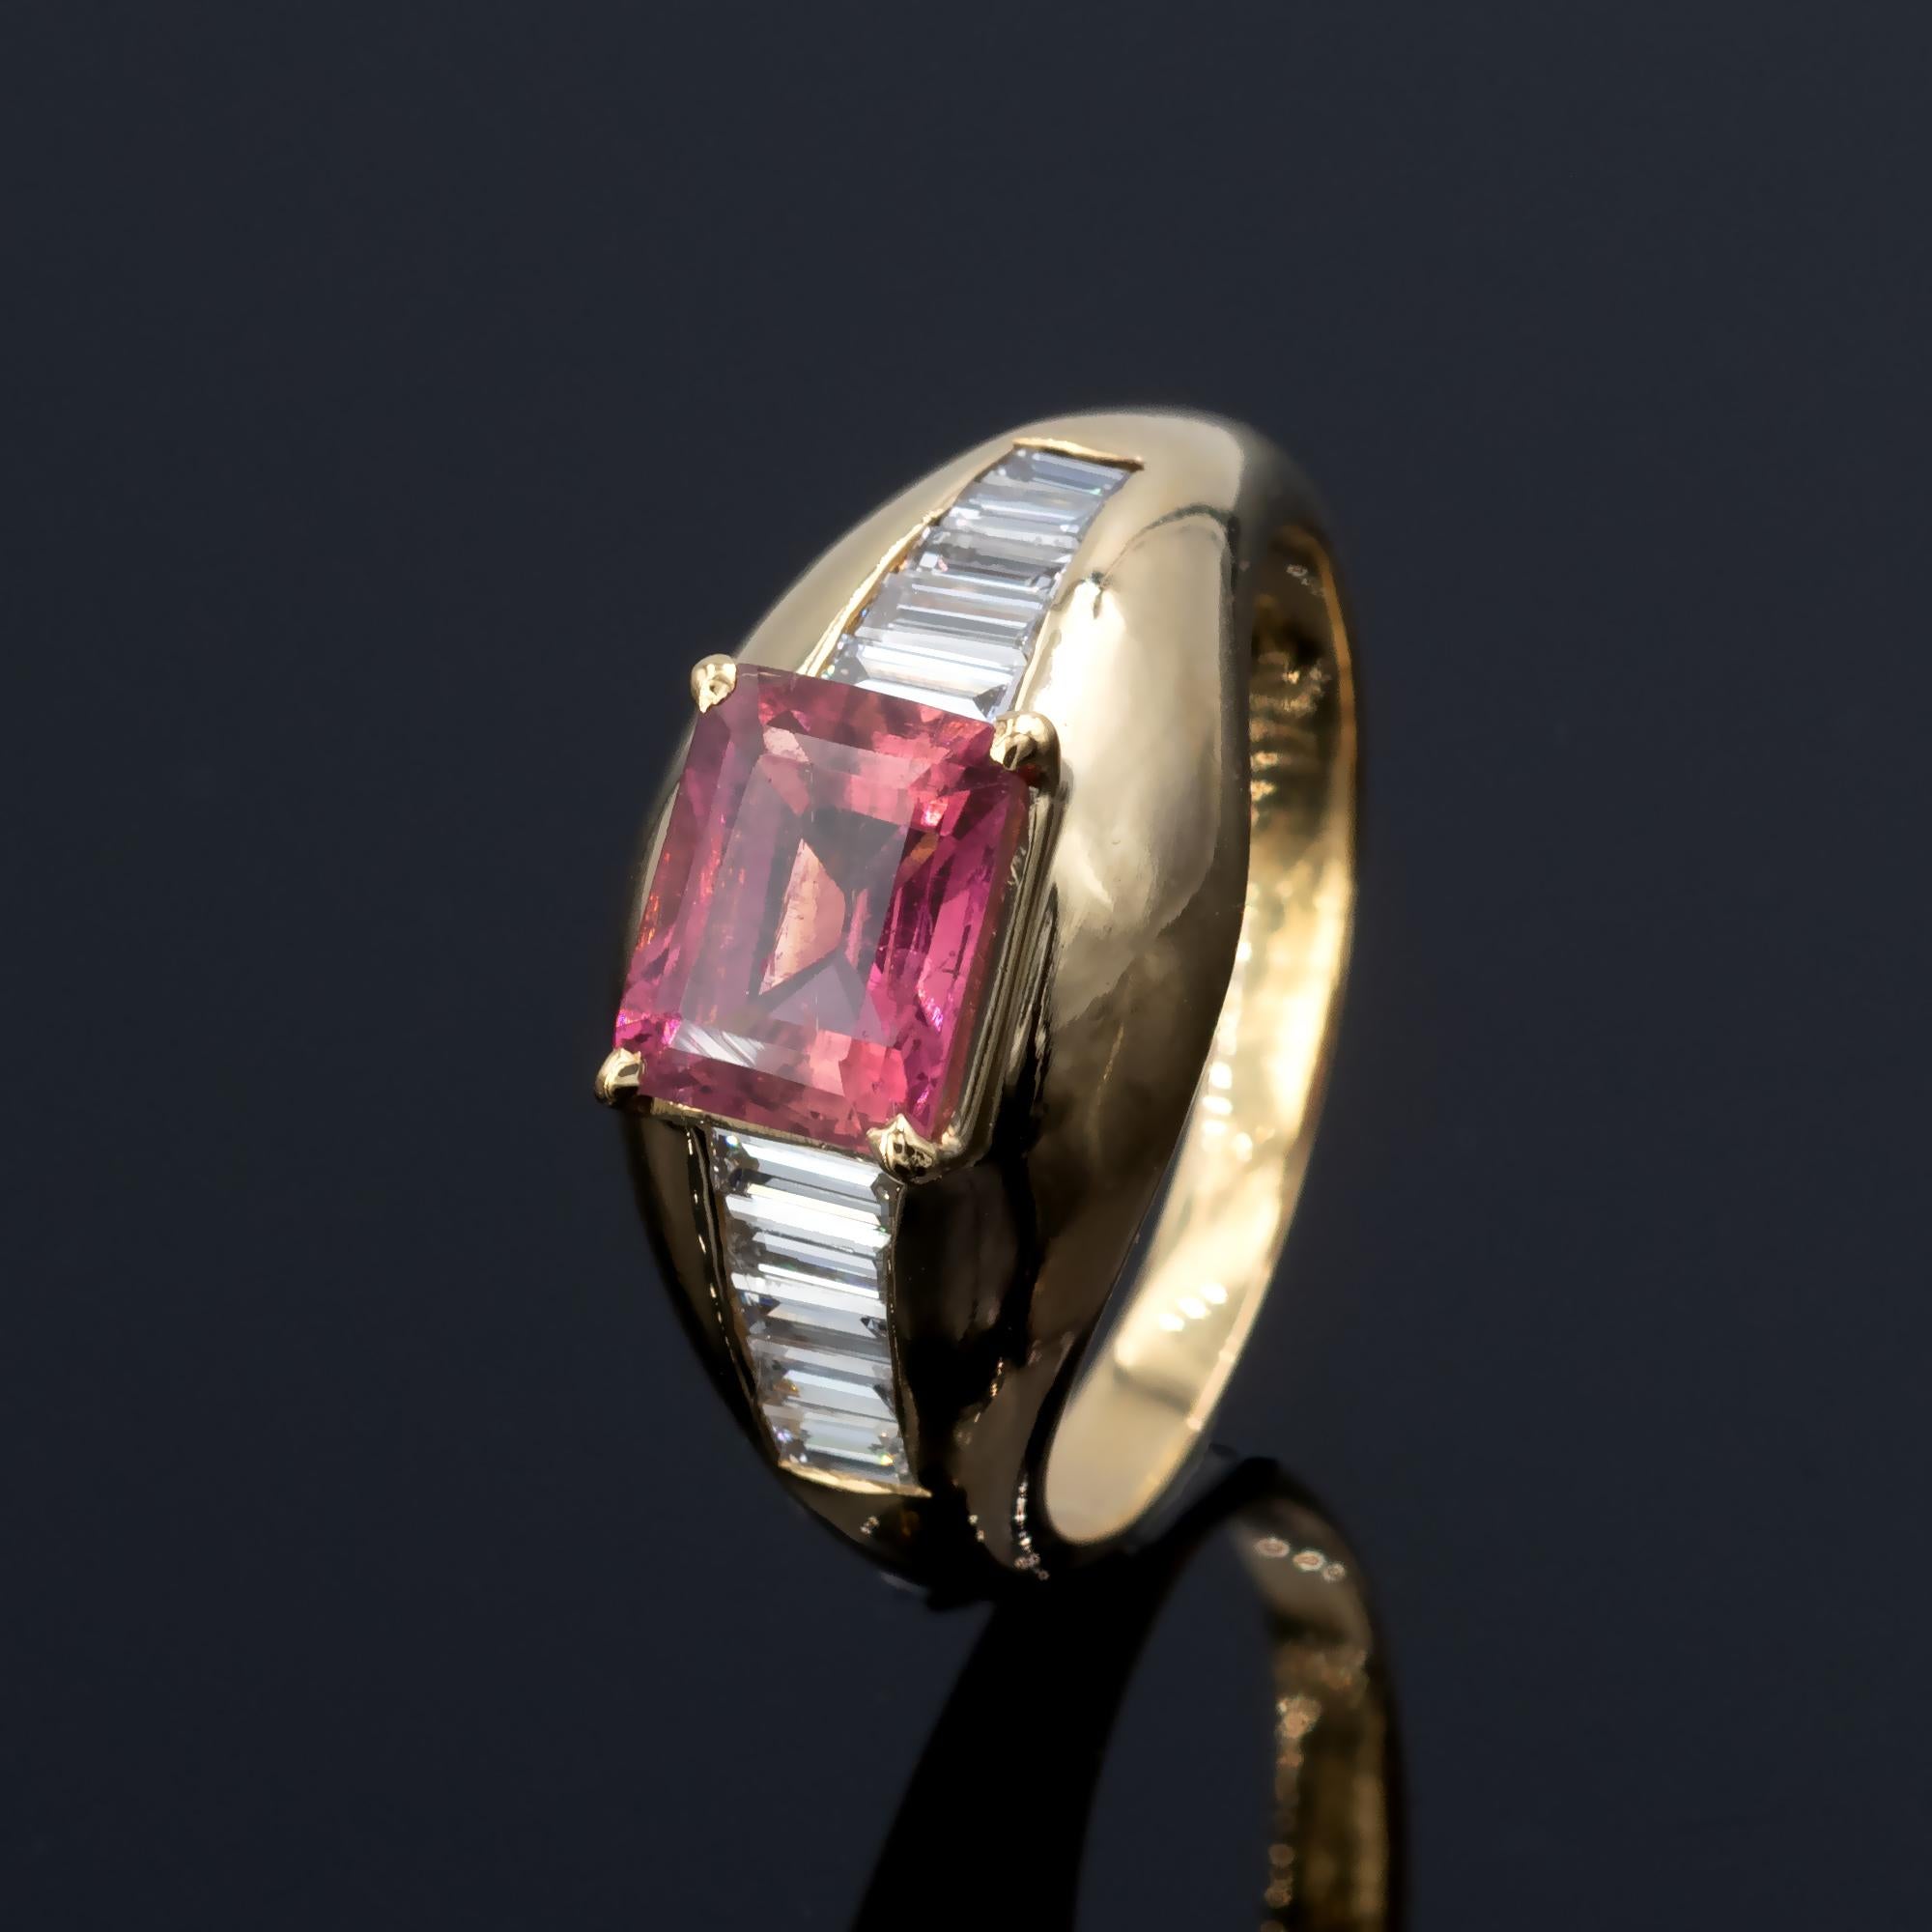 Bague en or jaune 18 carats ornée d'une tourmaline rose rectangulaire sertie en travers du doigt et rehaussée de dix diamants de taille baguette ( 0,60 carat FG VVS-VS). Le design est pur et la fabrication excellente.
